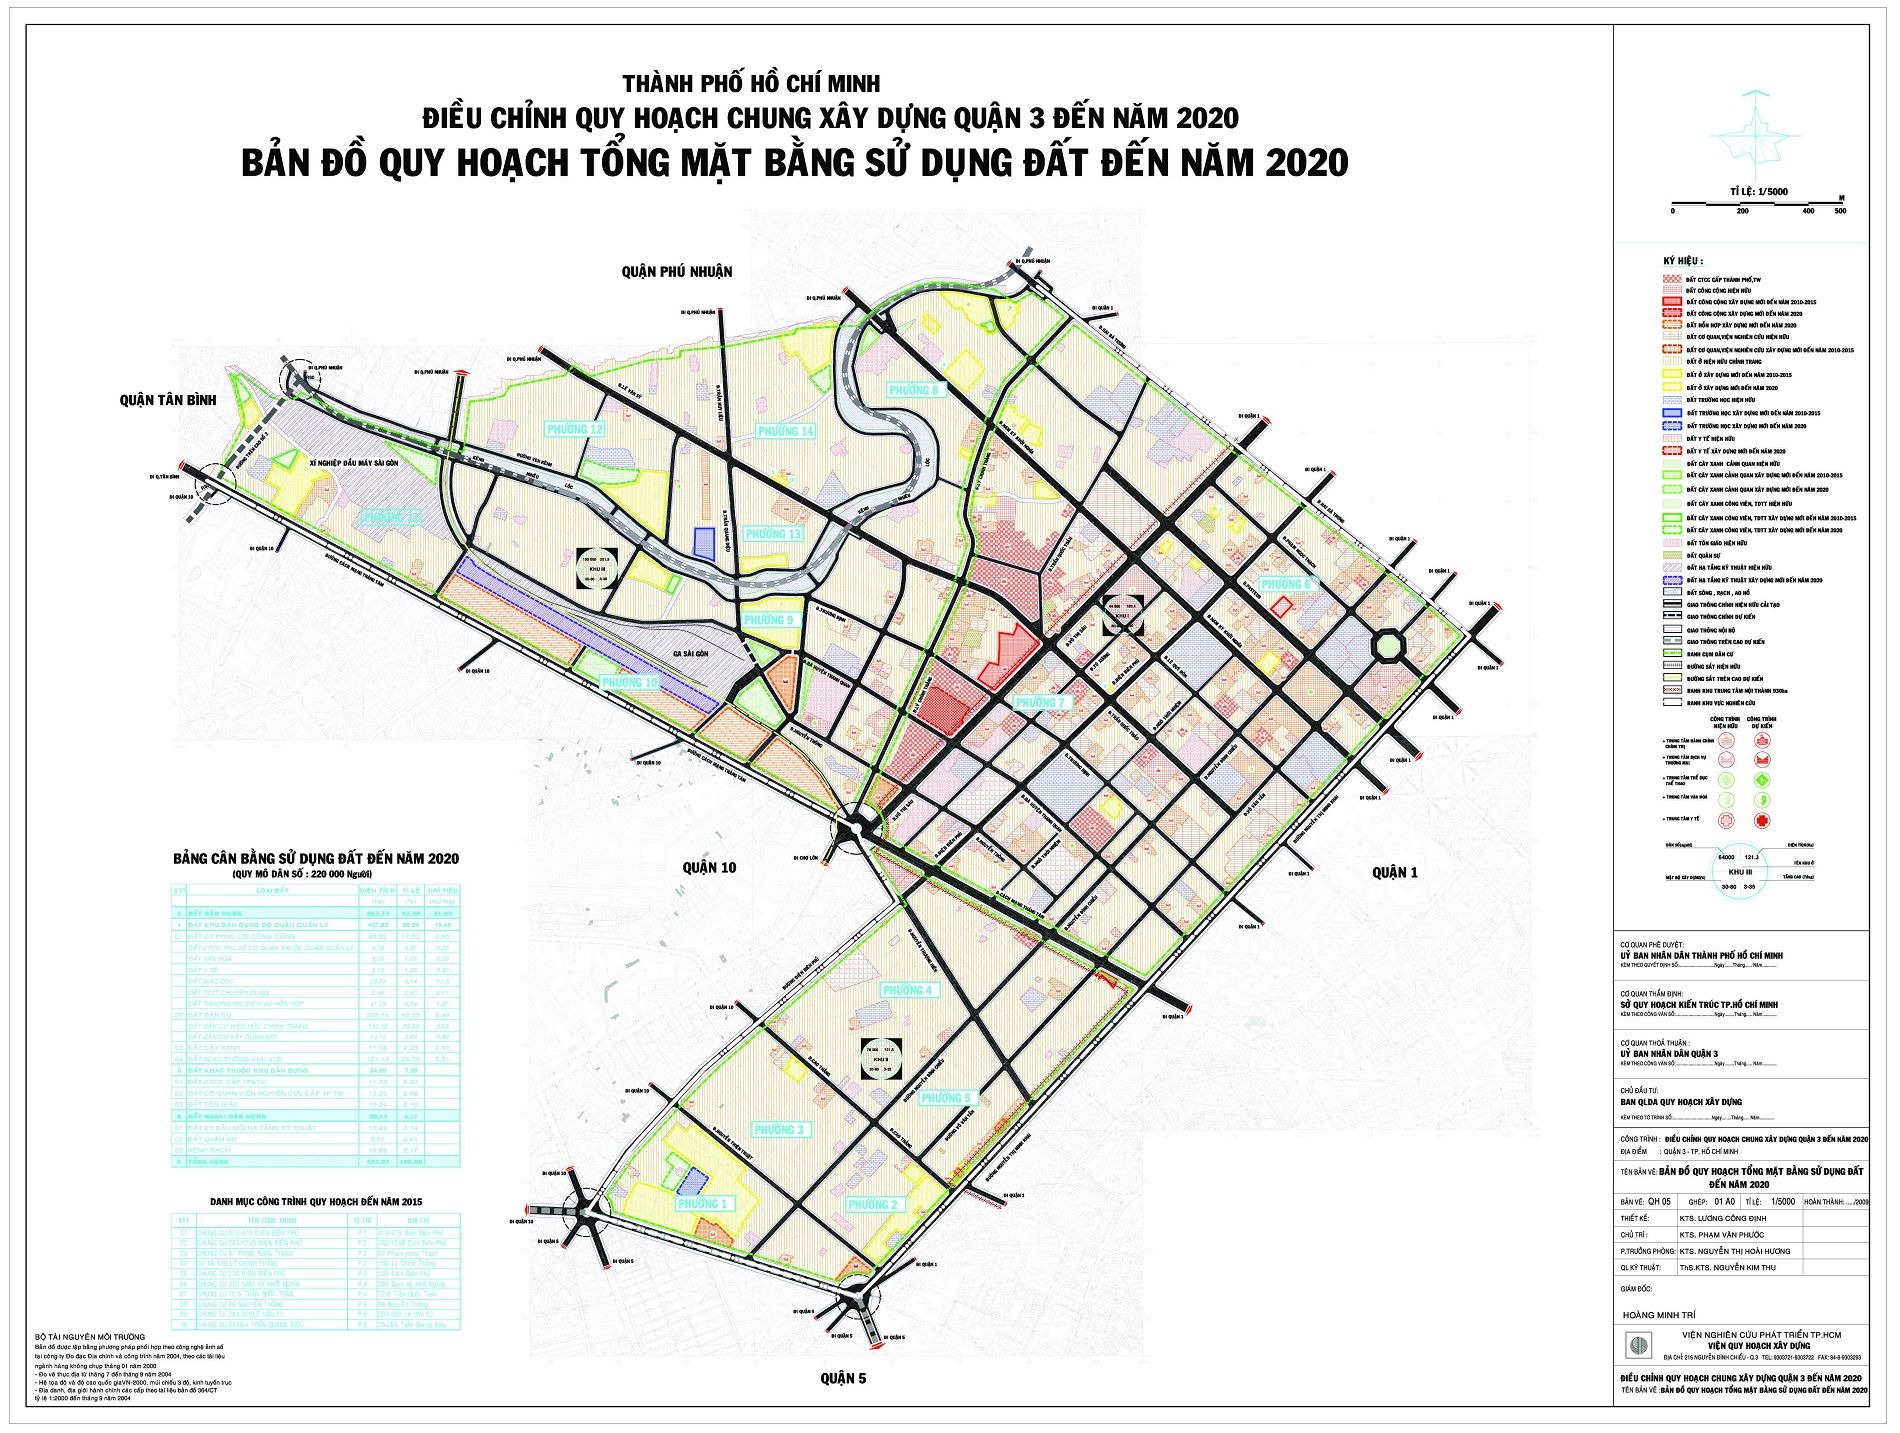 Bản đồ quy hoạch quận 3 TPHCM - Quy hoạch mặt bằng sử dụng đất Q3 đến năm 2020